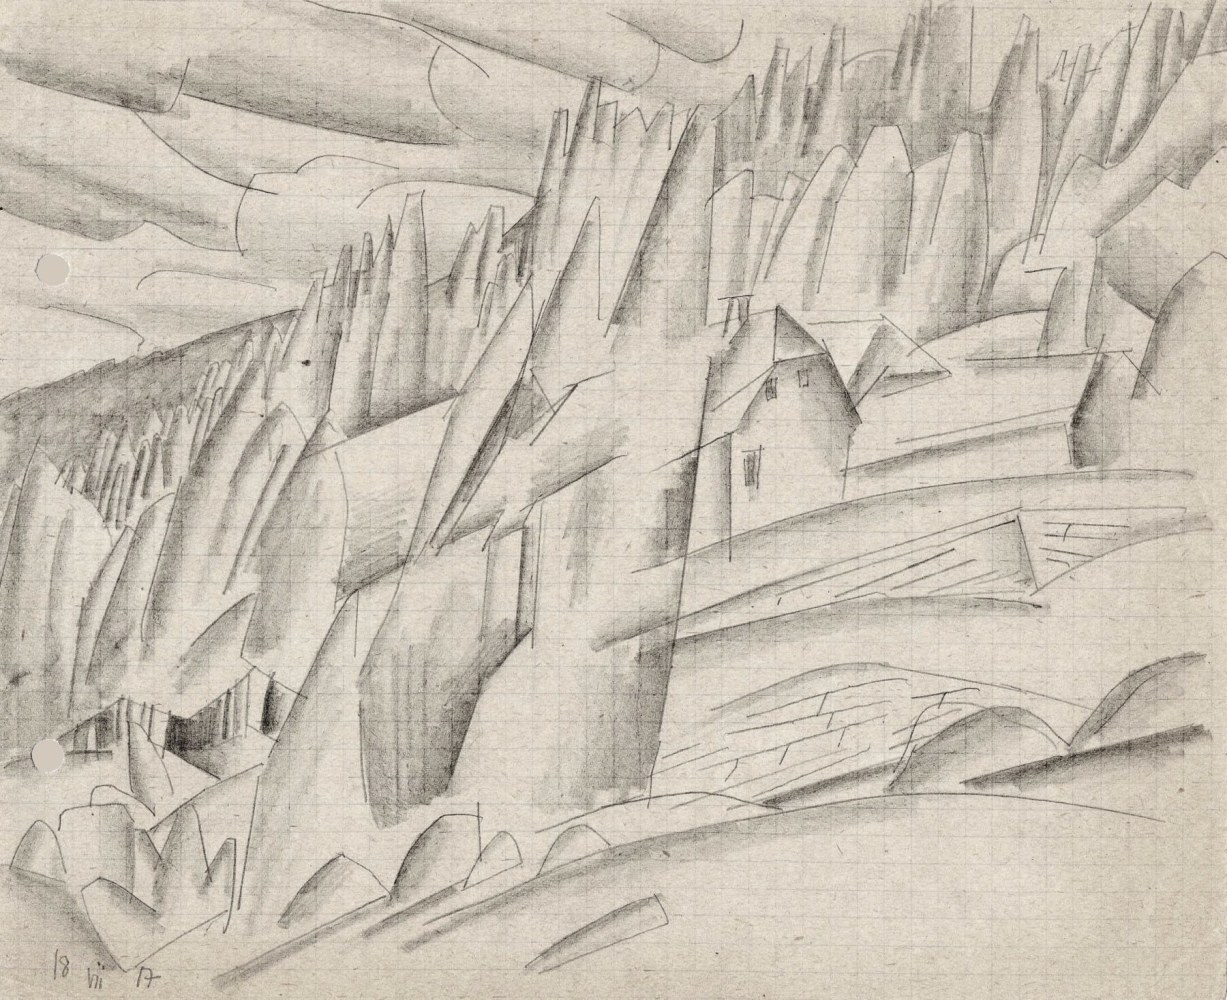 Lyonel Feininger (1871&amp;ndash;1956)
(Houses in the Woods), 1917
Pencil on graph paper
6 1/2&amp;nbsp;x 8 1/8&amp;nbsp;in. (16.5&amp;nbsp;x 20.6&amp;nbsp;cm)
Dated lower left: 18 VII 17